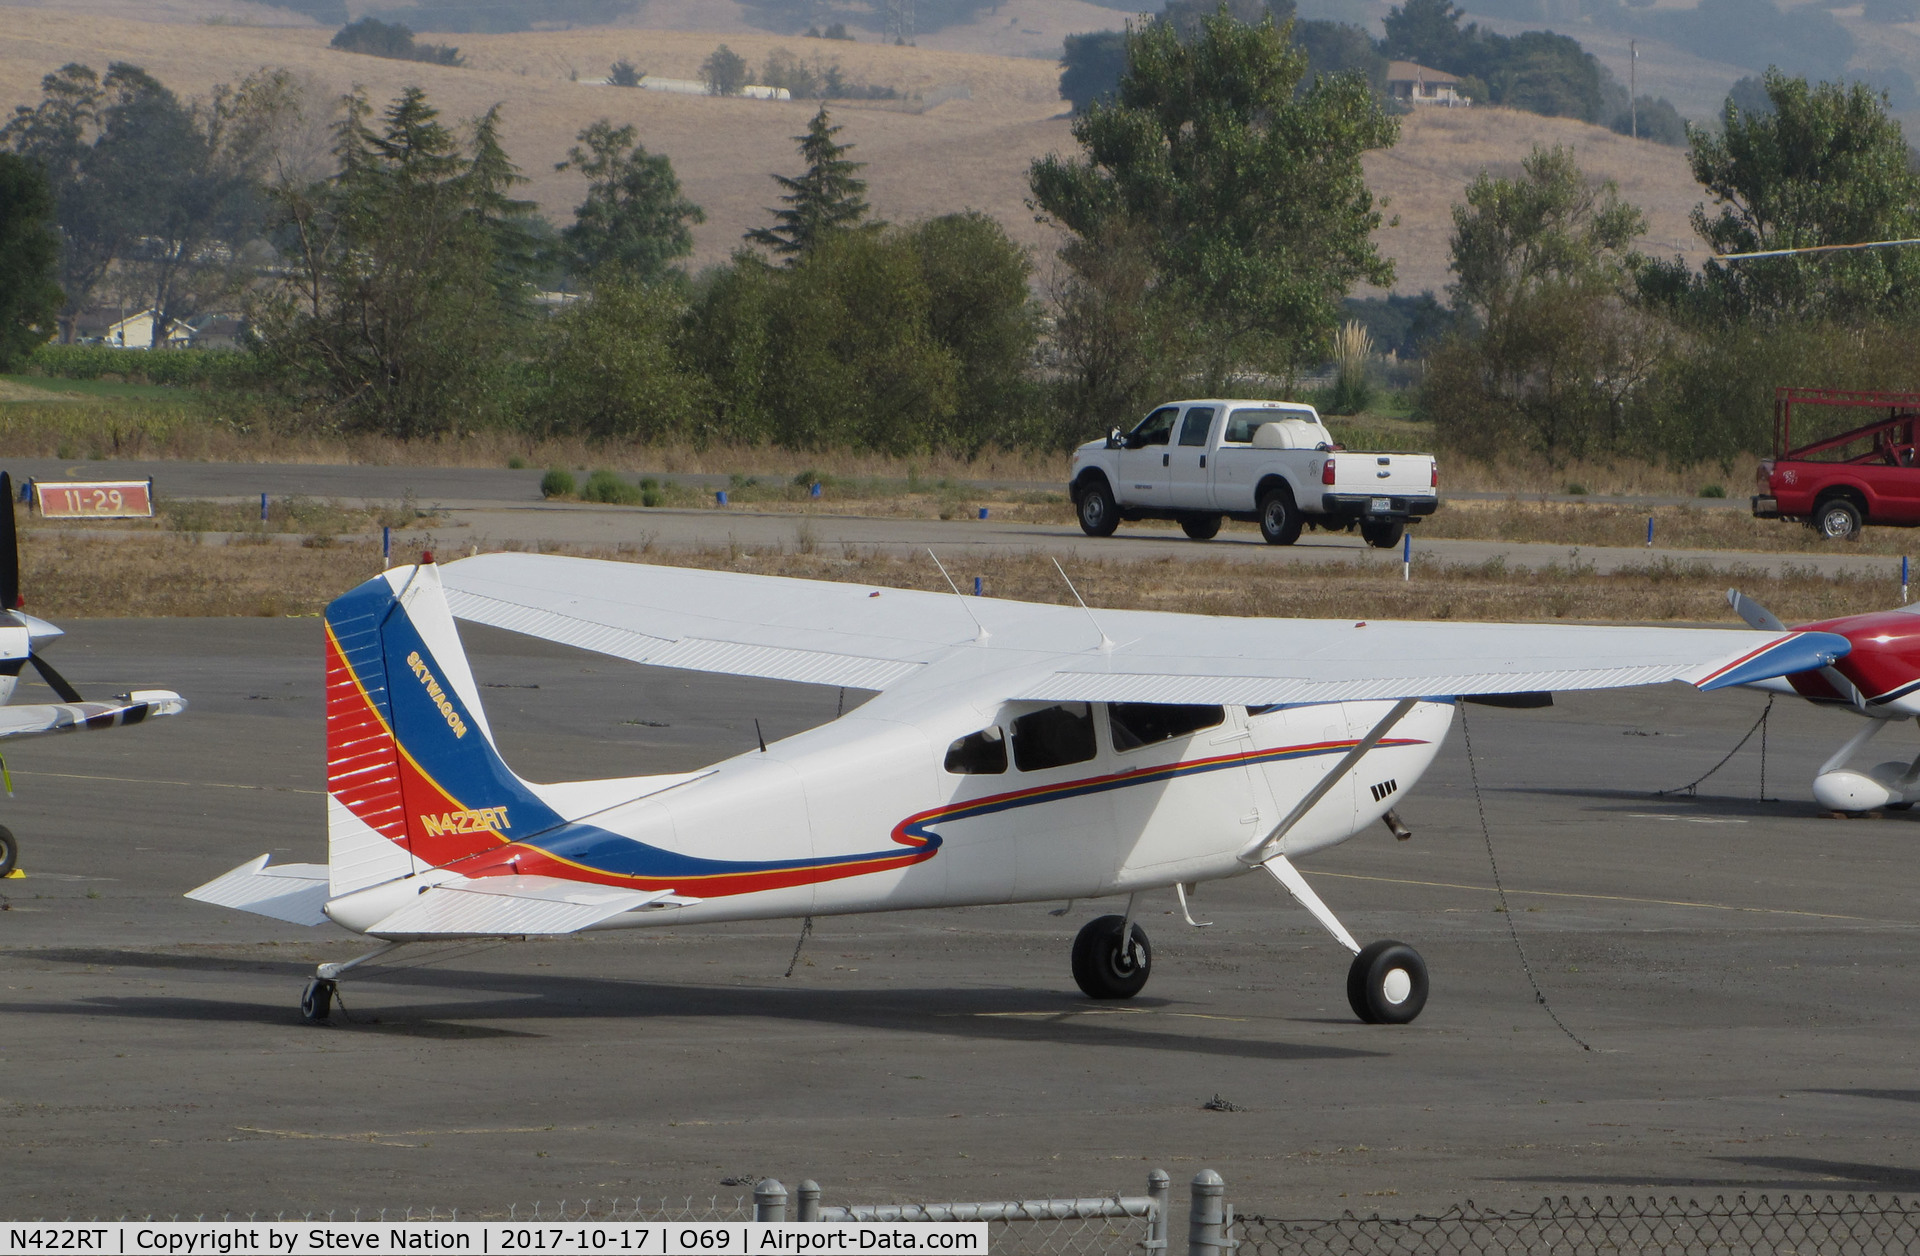 N422RT, Cessna 180 C/N 18052795, Colorful Montana-based 1977 Cessna 180K @ Petaluma Municipal airport, CA